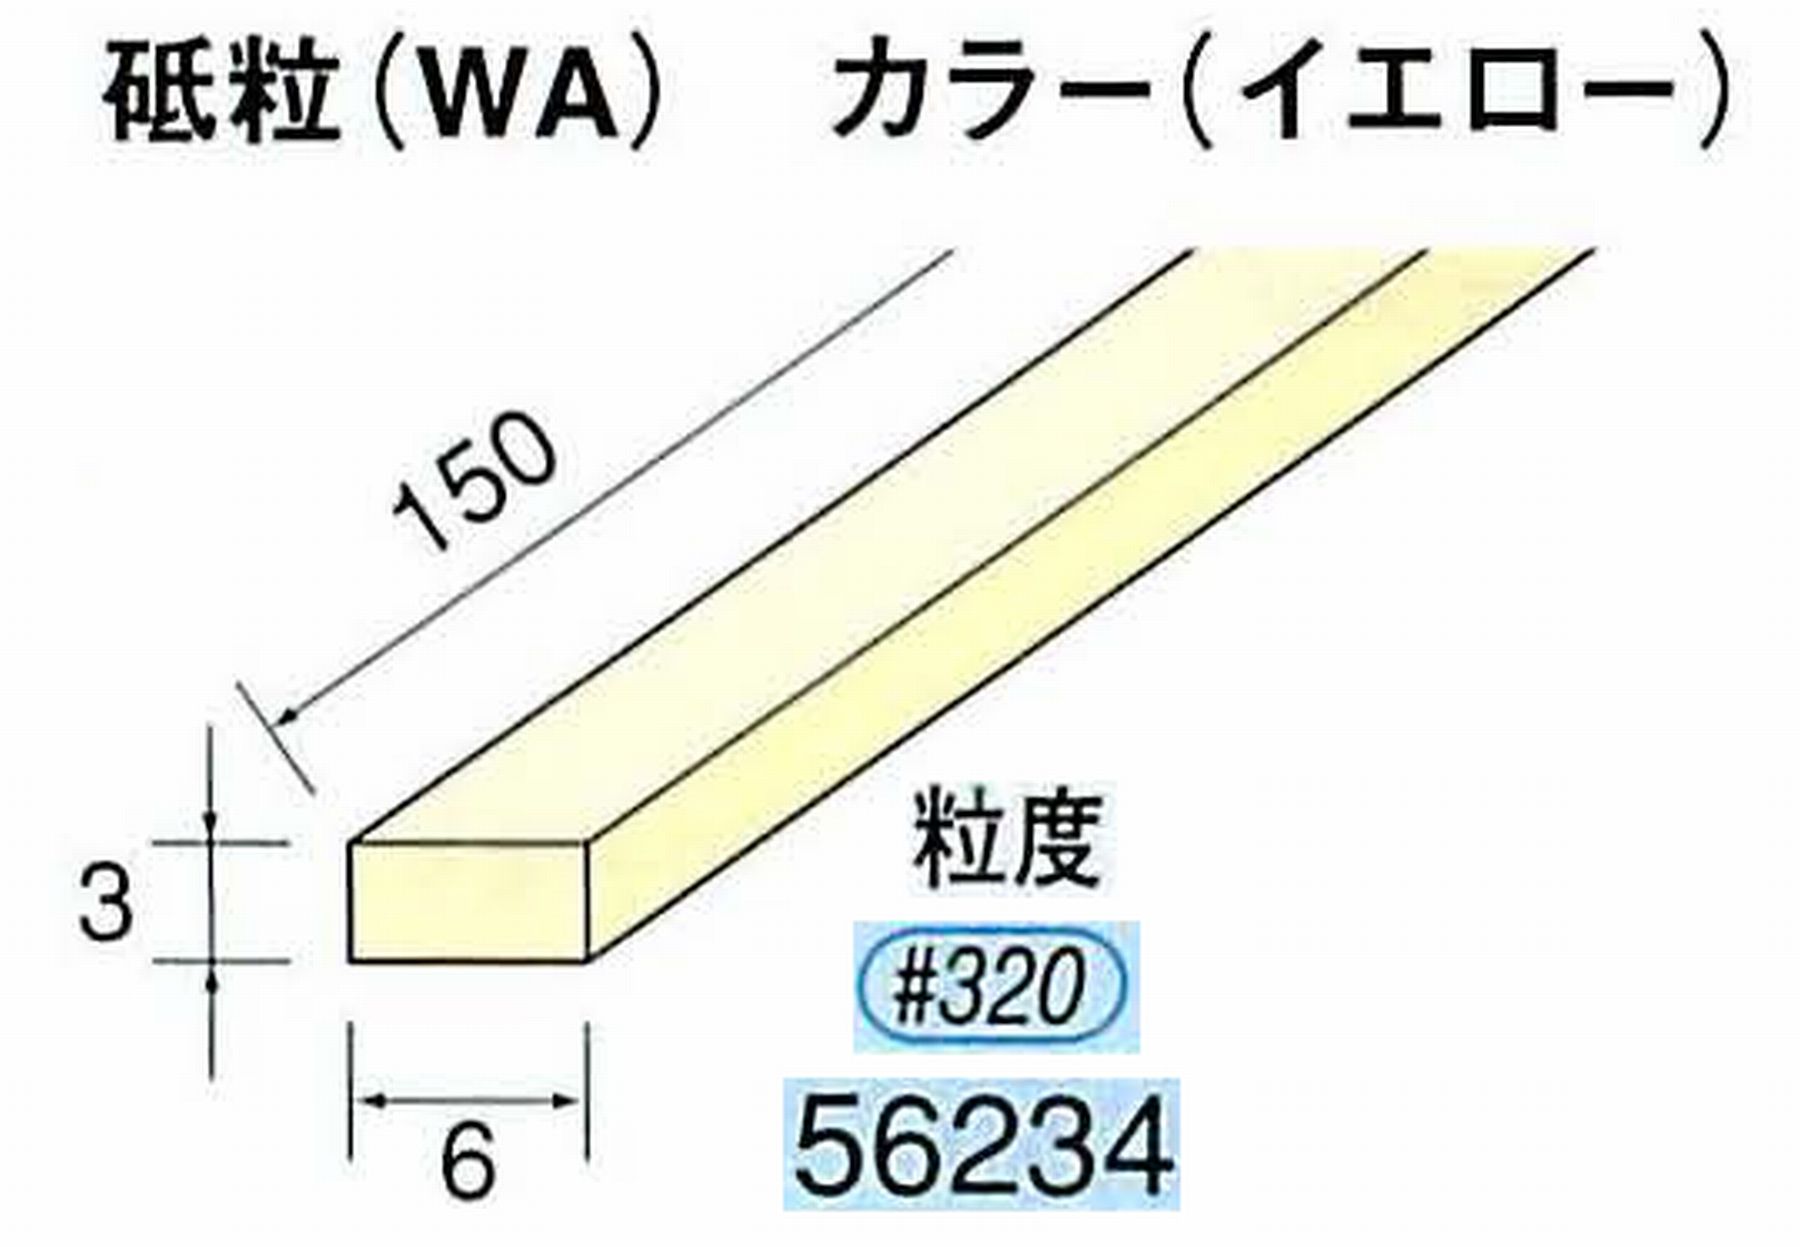 ナカニシ/NAKANISHI スティック砥石 イエロー・フィニッシュシリーズ 砥粒(WA) 56234